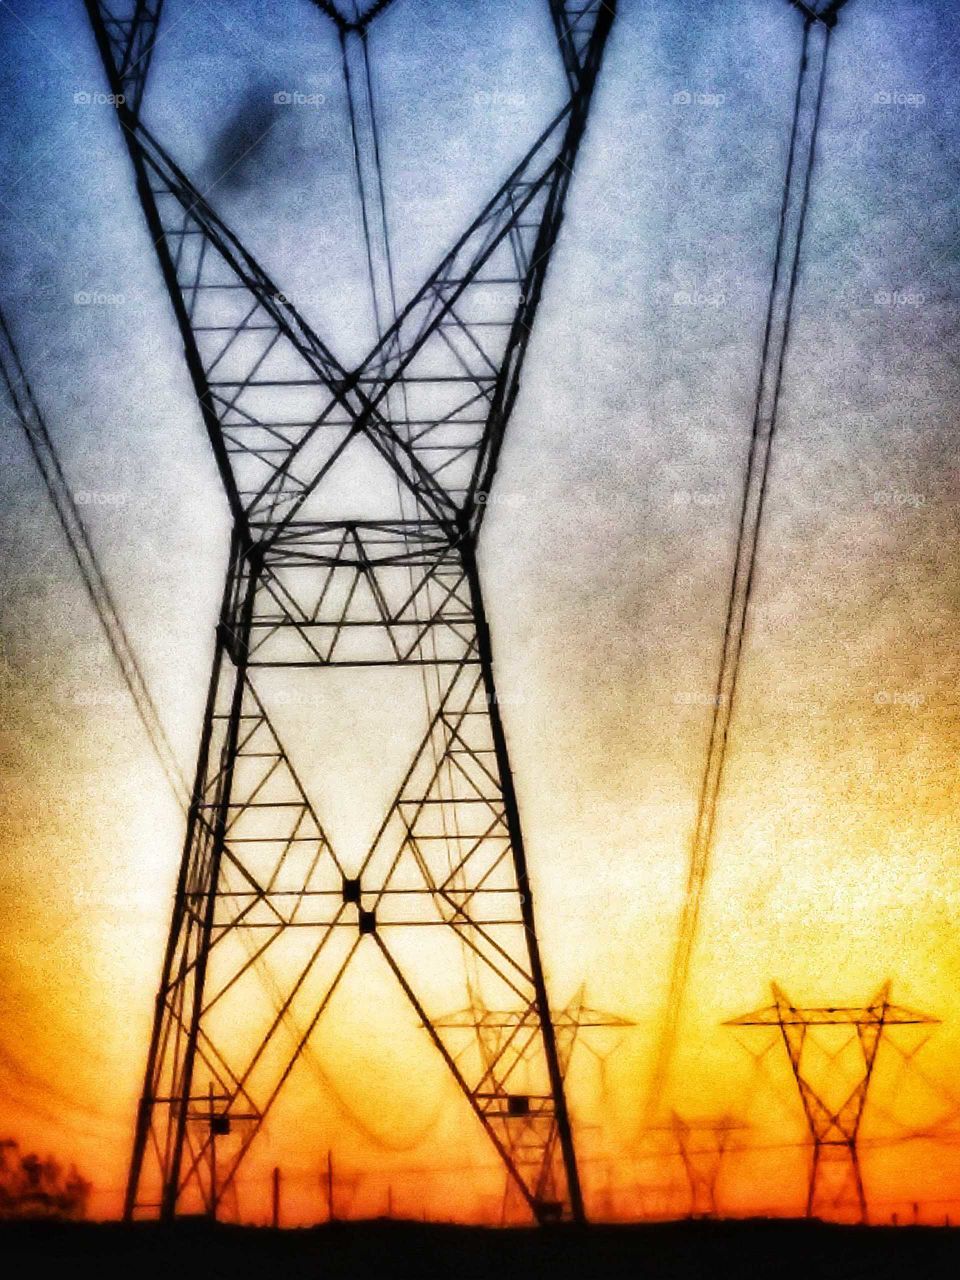 electric towers before sundown 108° desert summertime